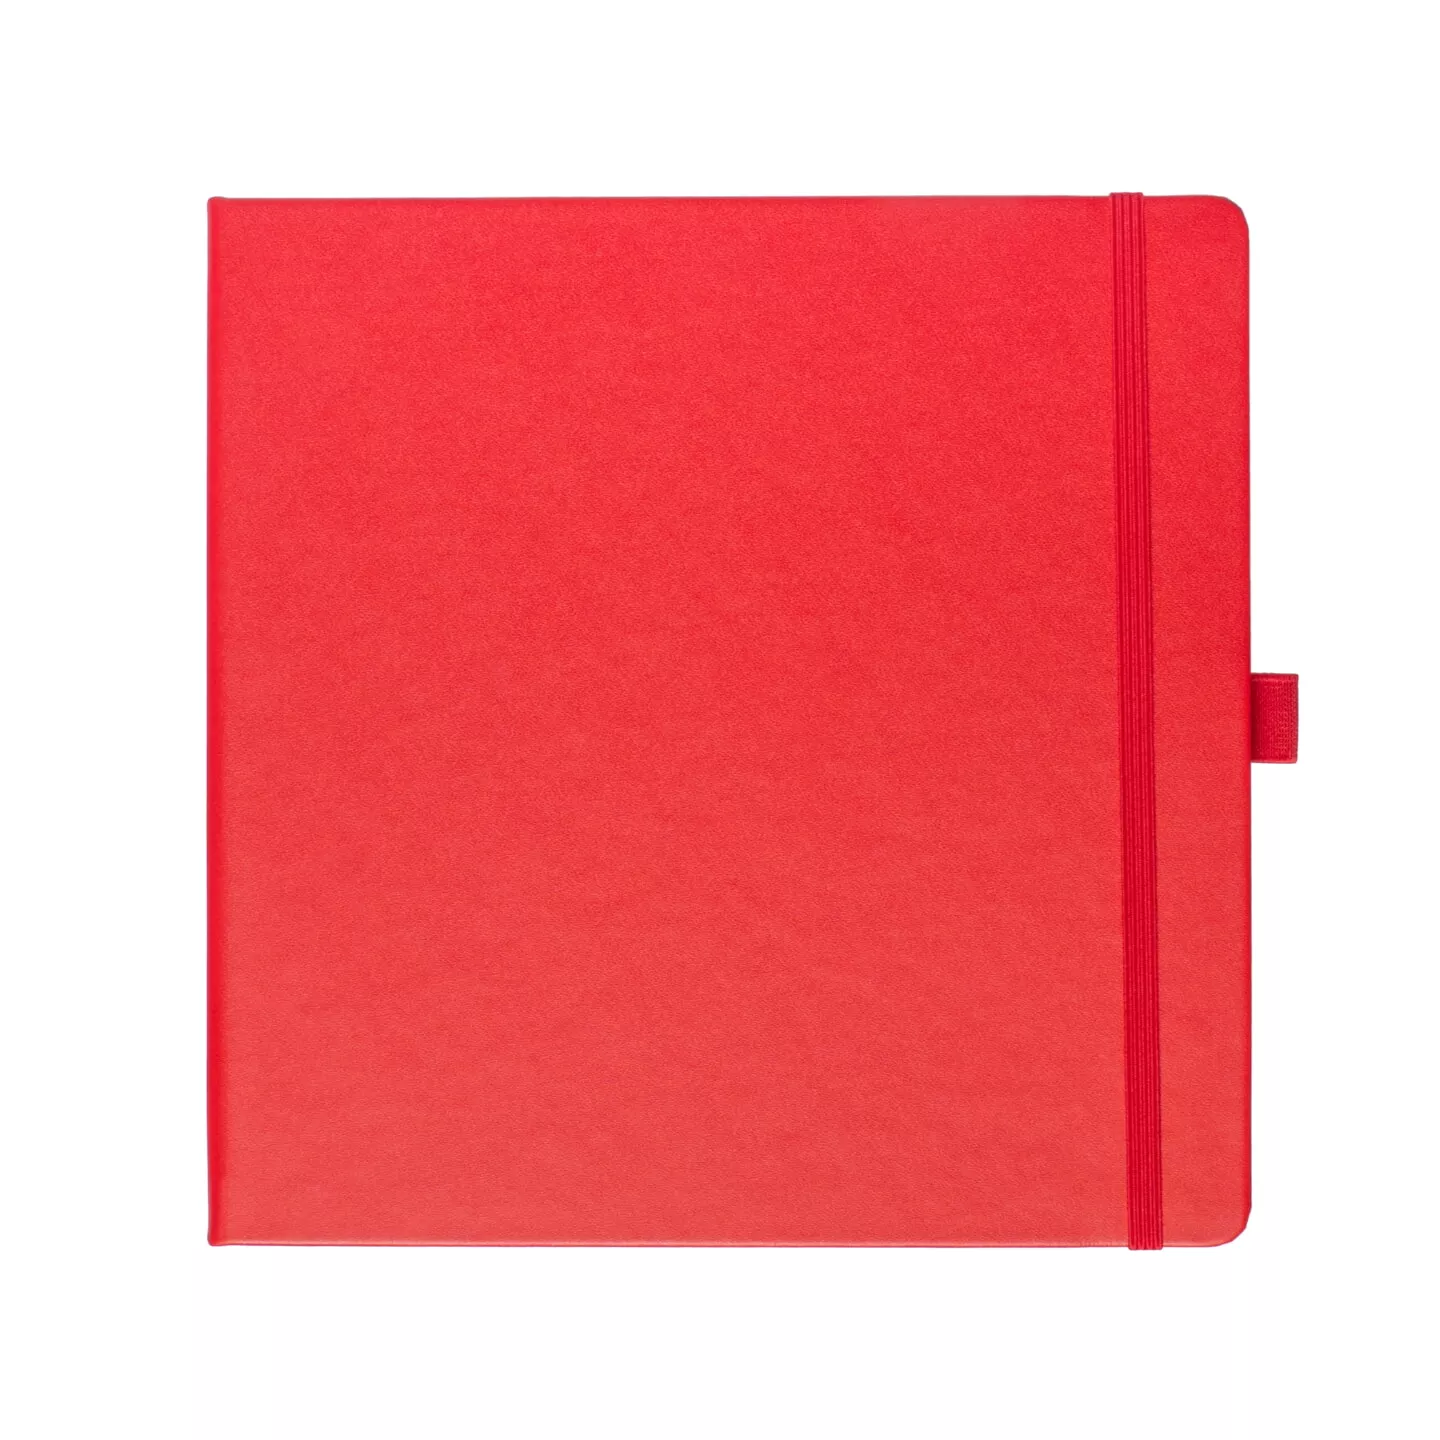 Блокнот для зарисовок Sketchmarker 140г/кв.м 20*20cм 80л (Красный)